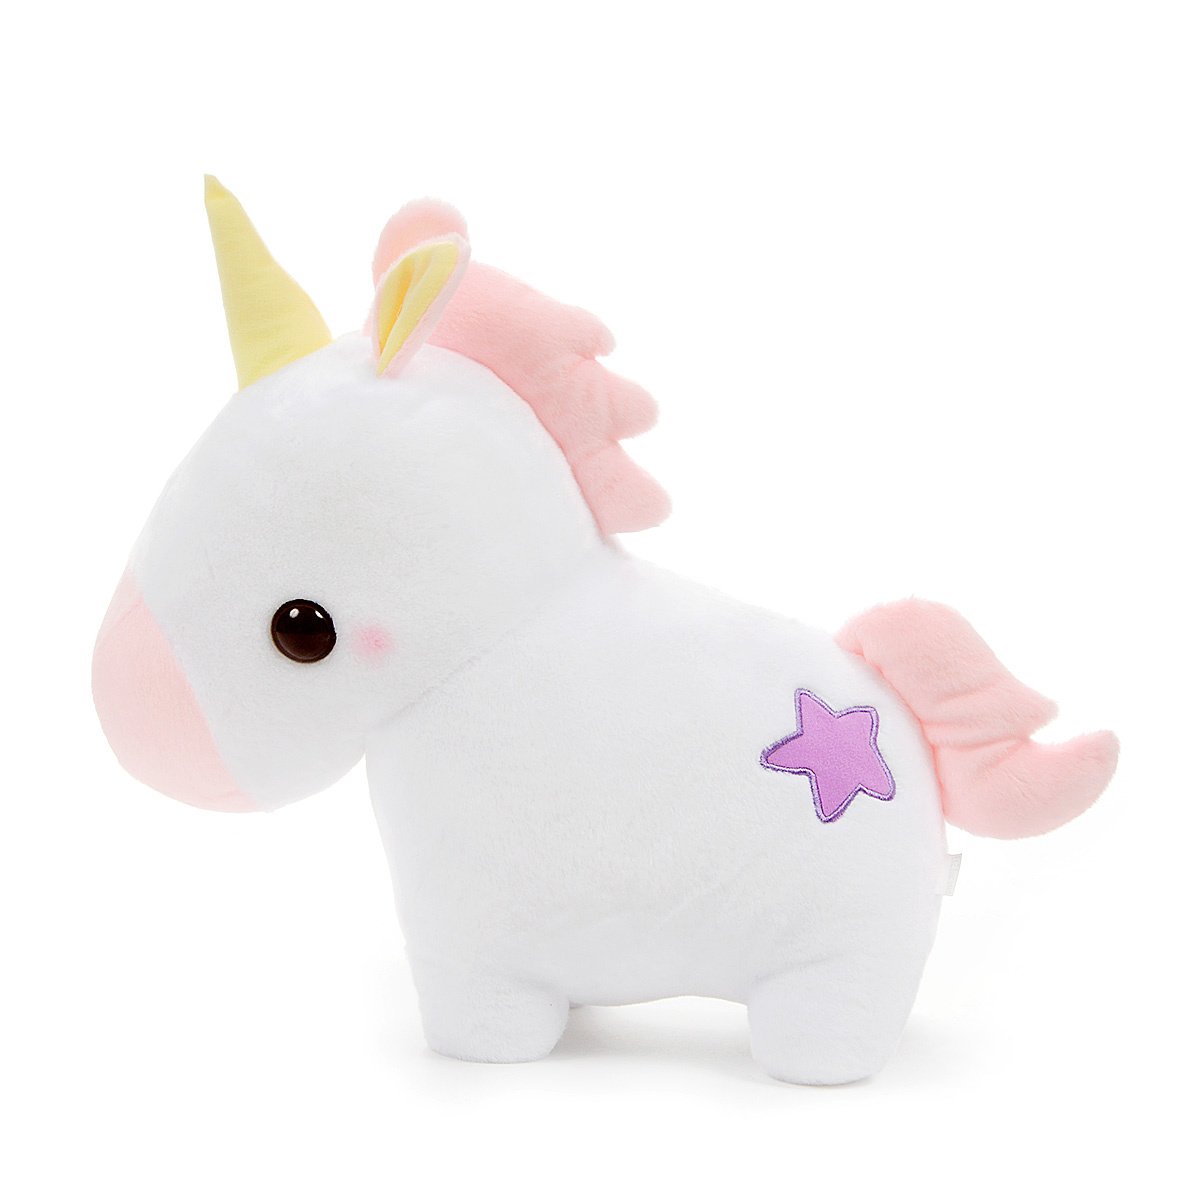 Amuse Unicorn Plush Doll Yume-kawa Collection Lovely Pink Big Size